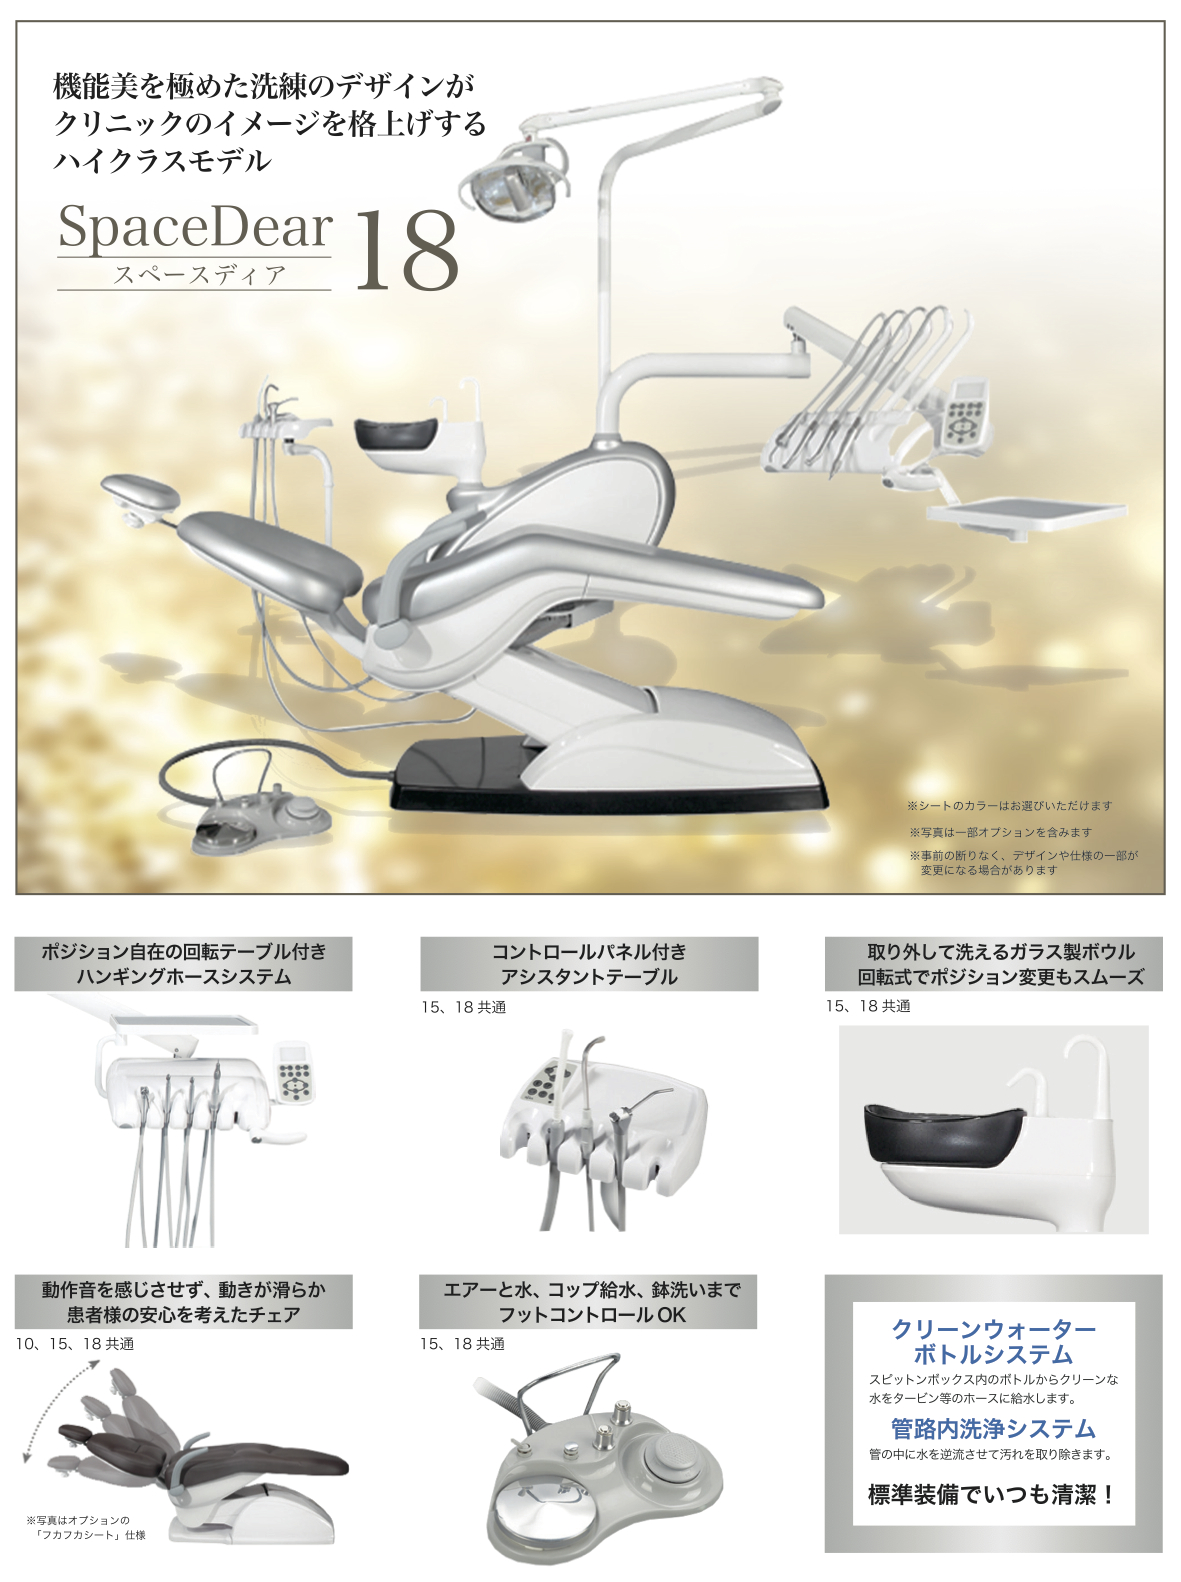 SD_spacedear6